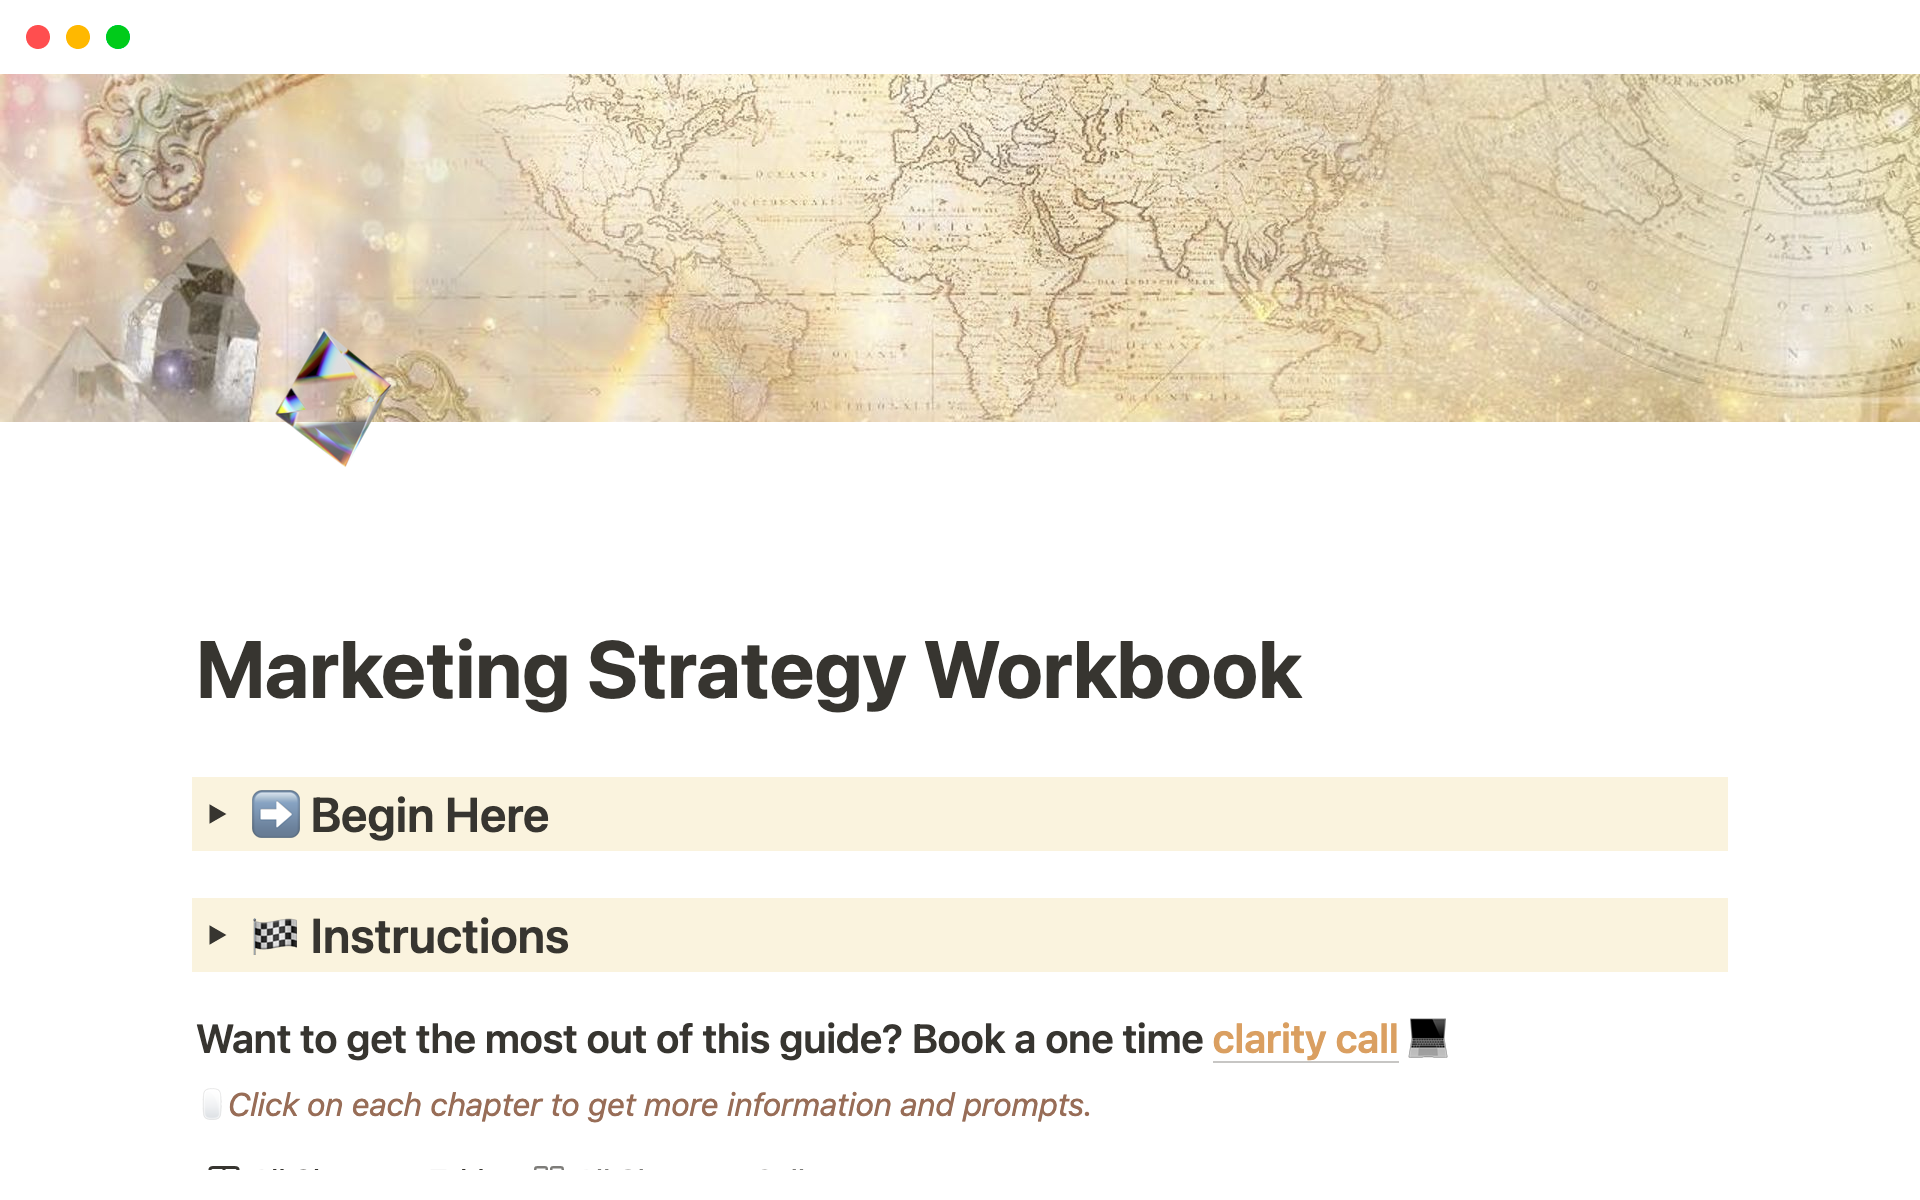 Vista previa de una plantilla para Marketing Strategy Workbook